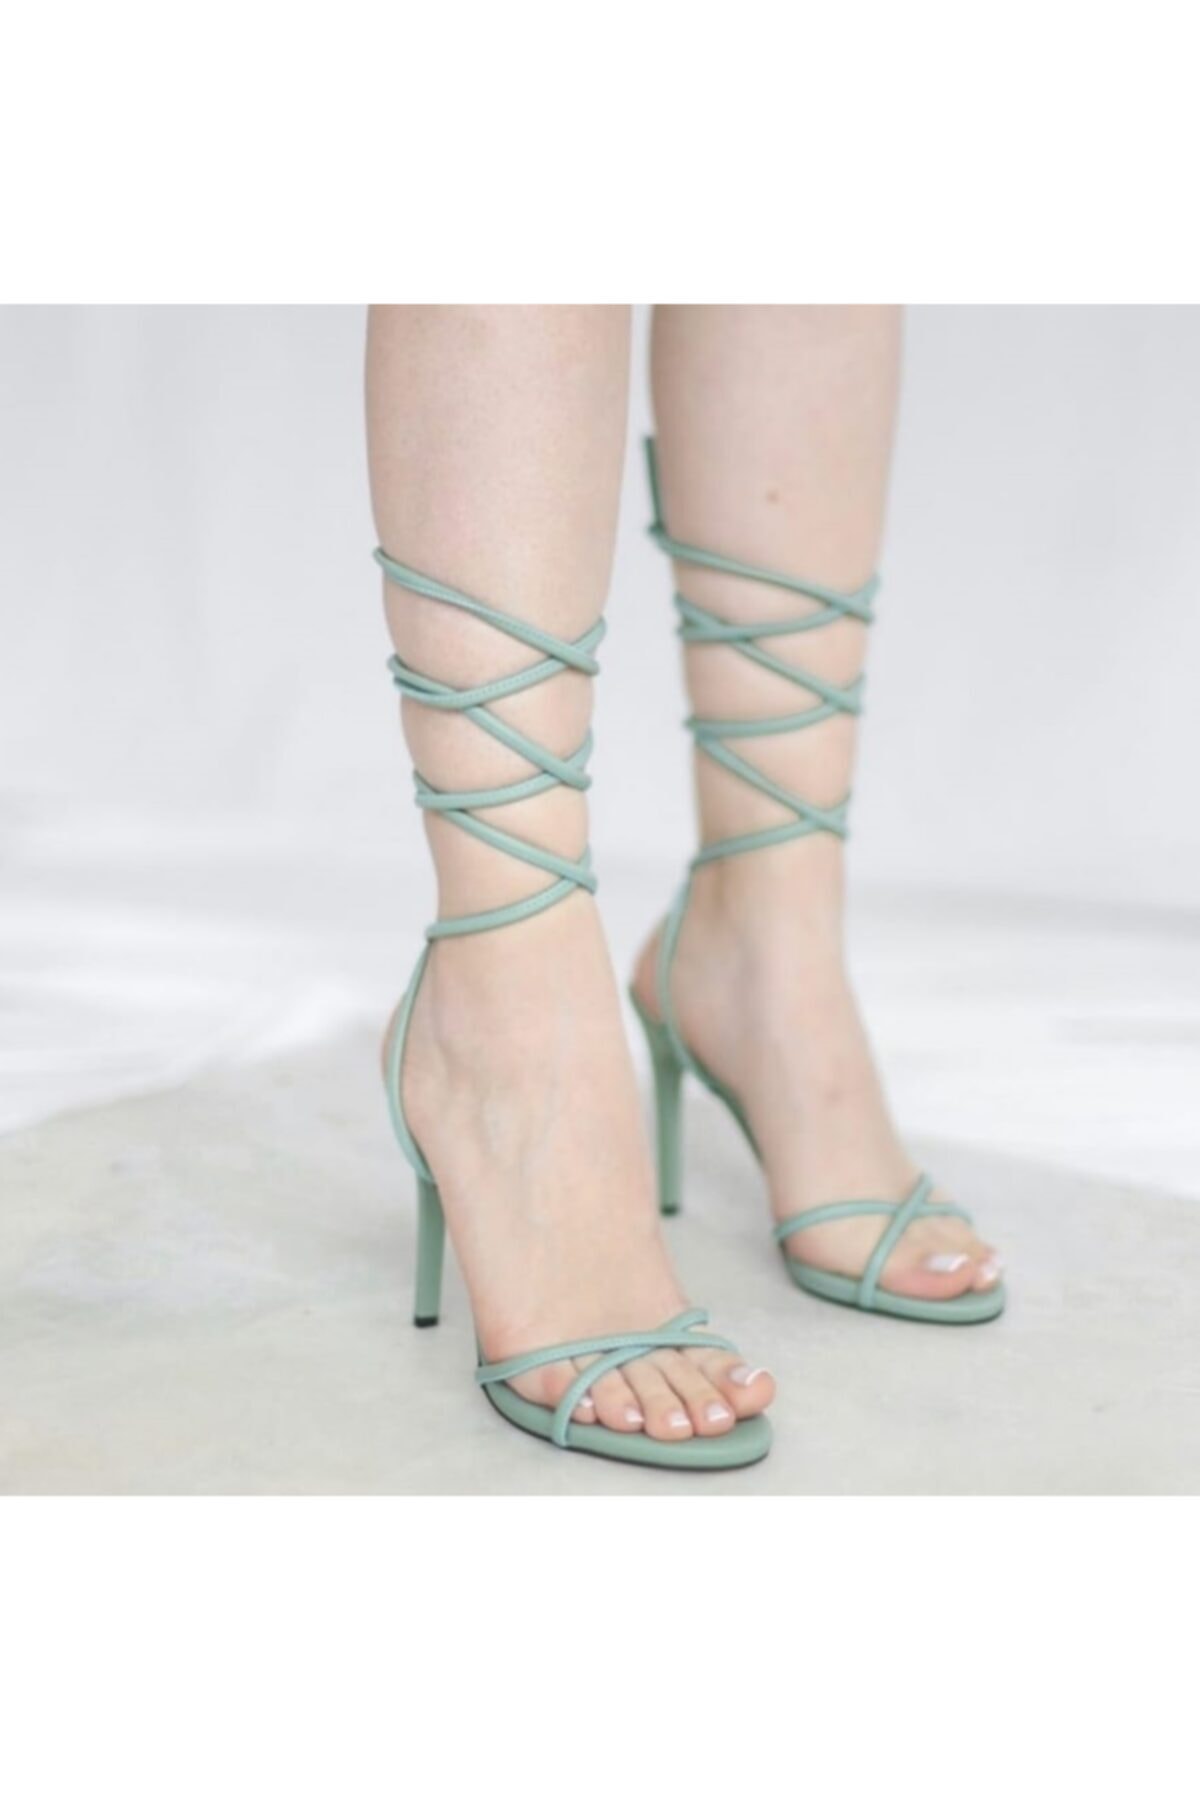 Afilli Kadın Mint Yeşil Ince Tek Bant Topuk Sandalet Ayakkabı Bilekten Bağcıklı Yüksek Sivri Abiye